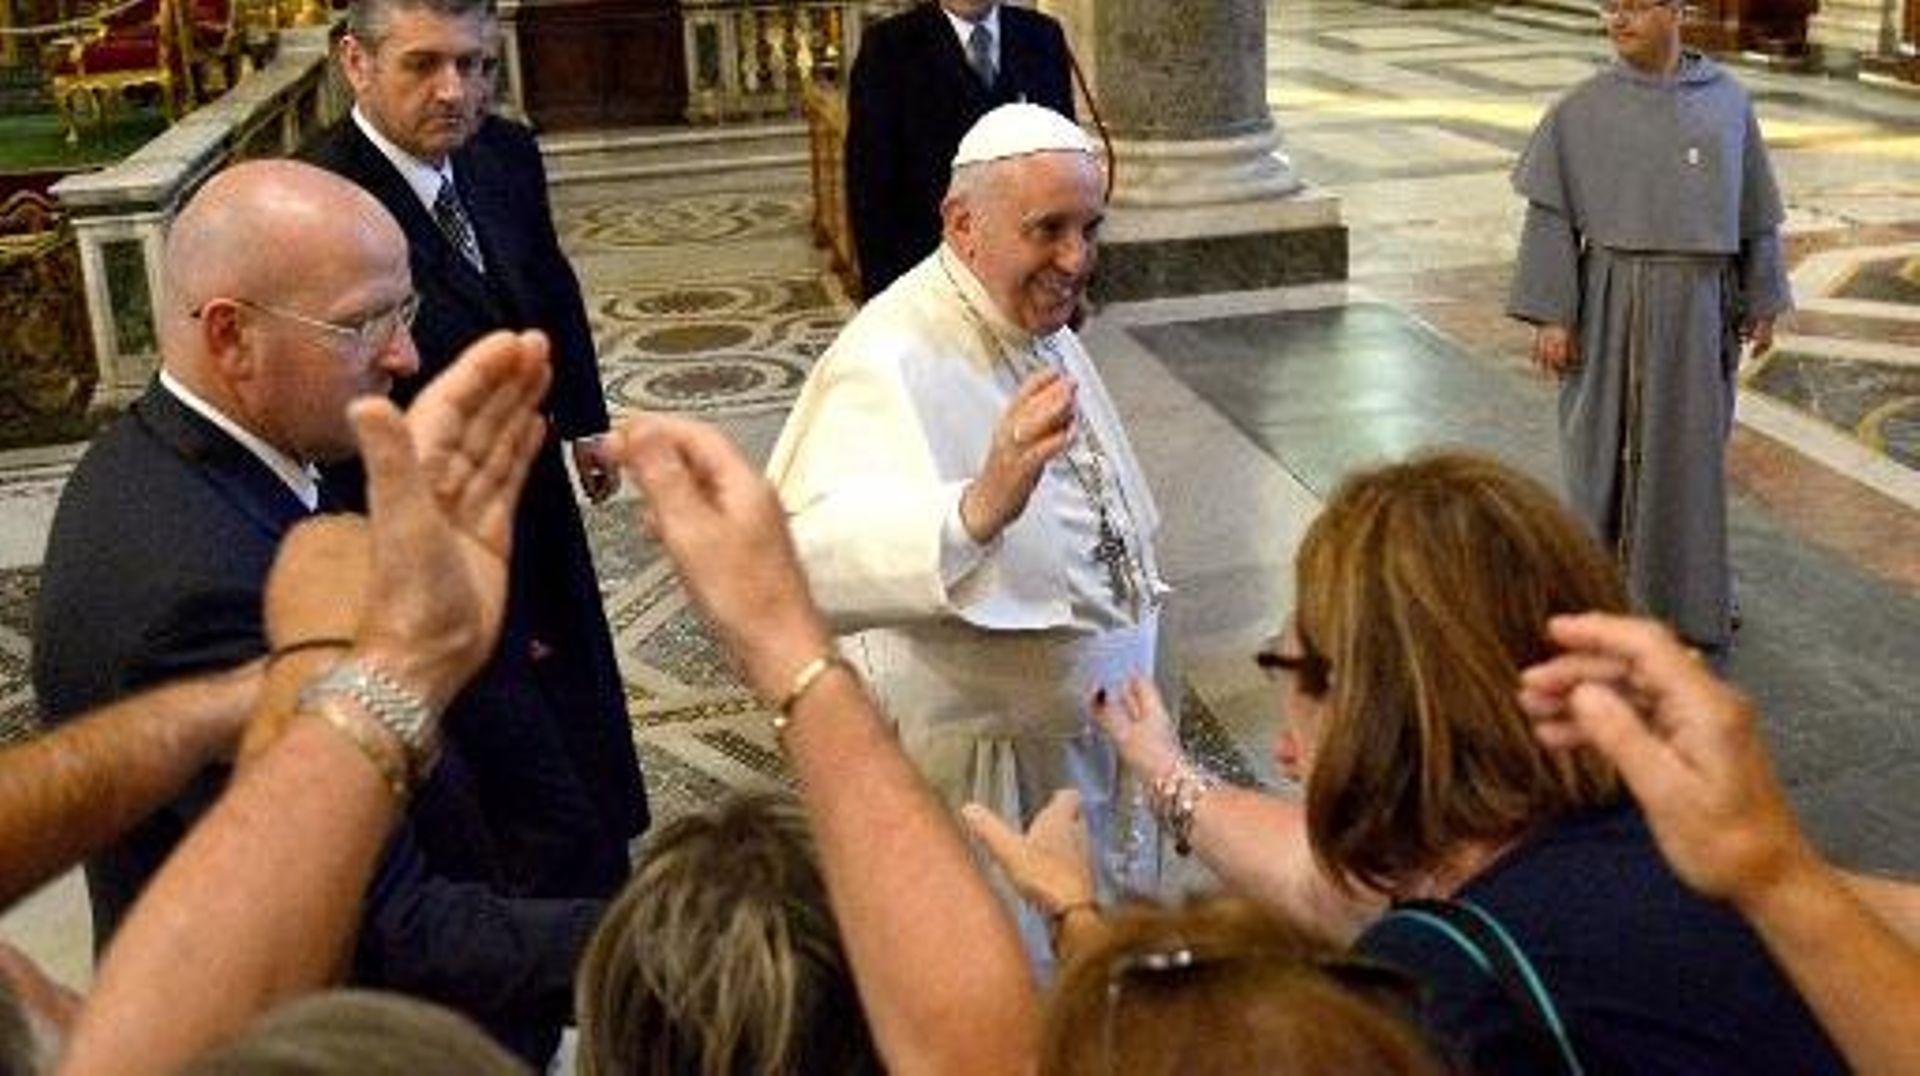 Le pape François salue les fidèles lors de sa visite à la basilique Sainte-Marie-Majeure à son retour de Corée du Sud, le 18 août 2014 à Rome